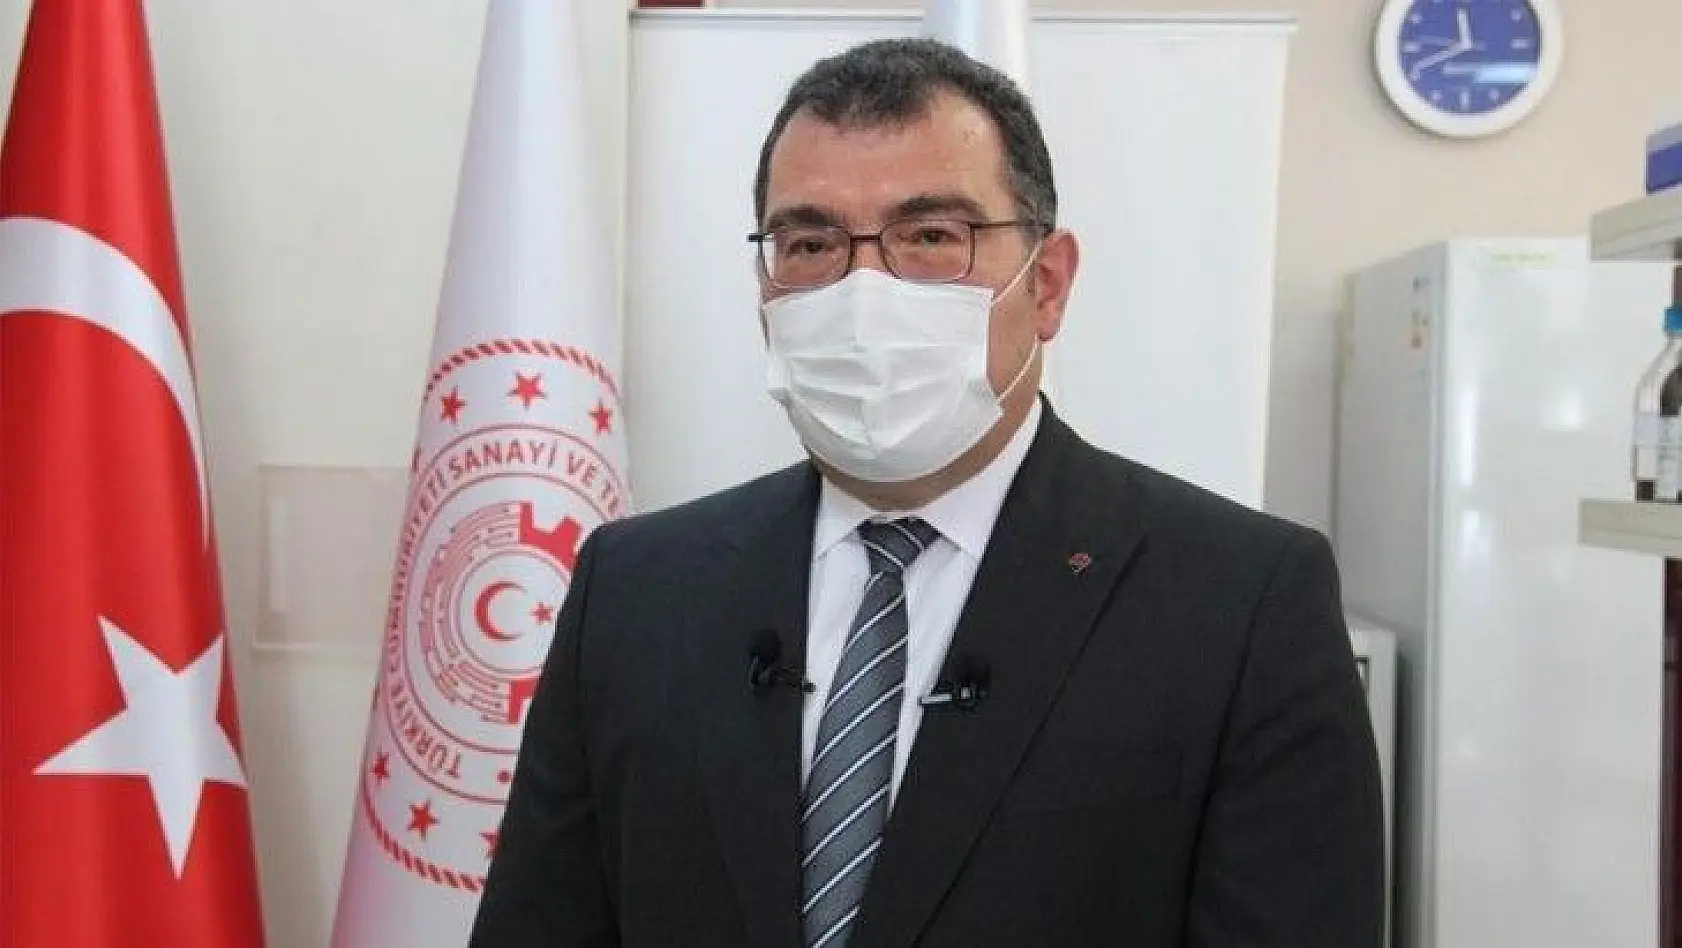 TÜBİTAK Başkanı Prof. Dr. Hasan Mandal'dan aşı açıklaması